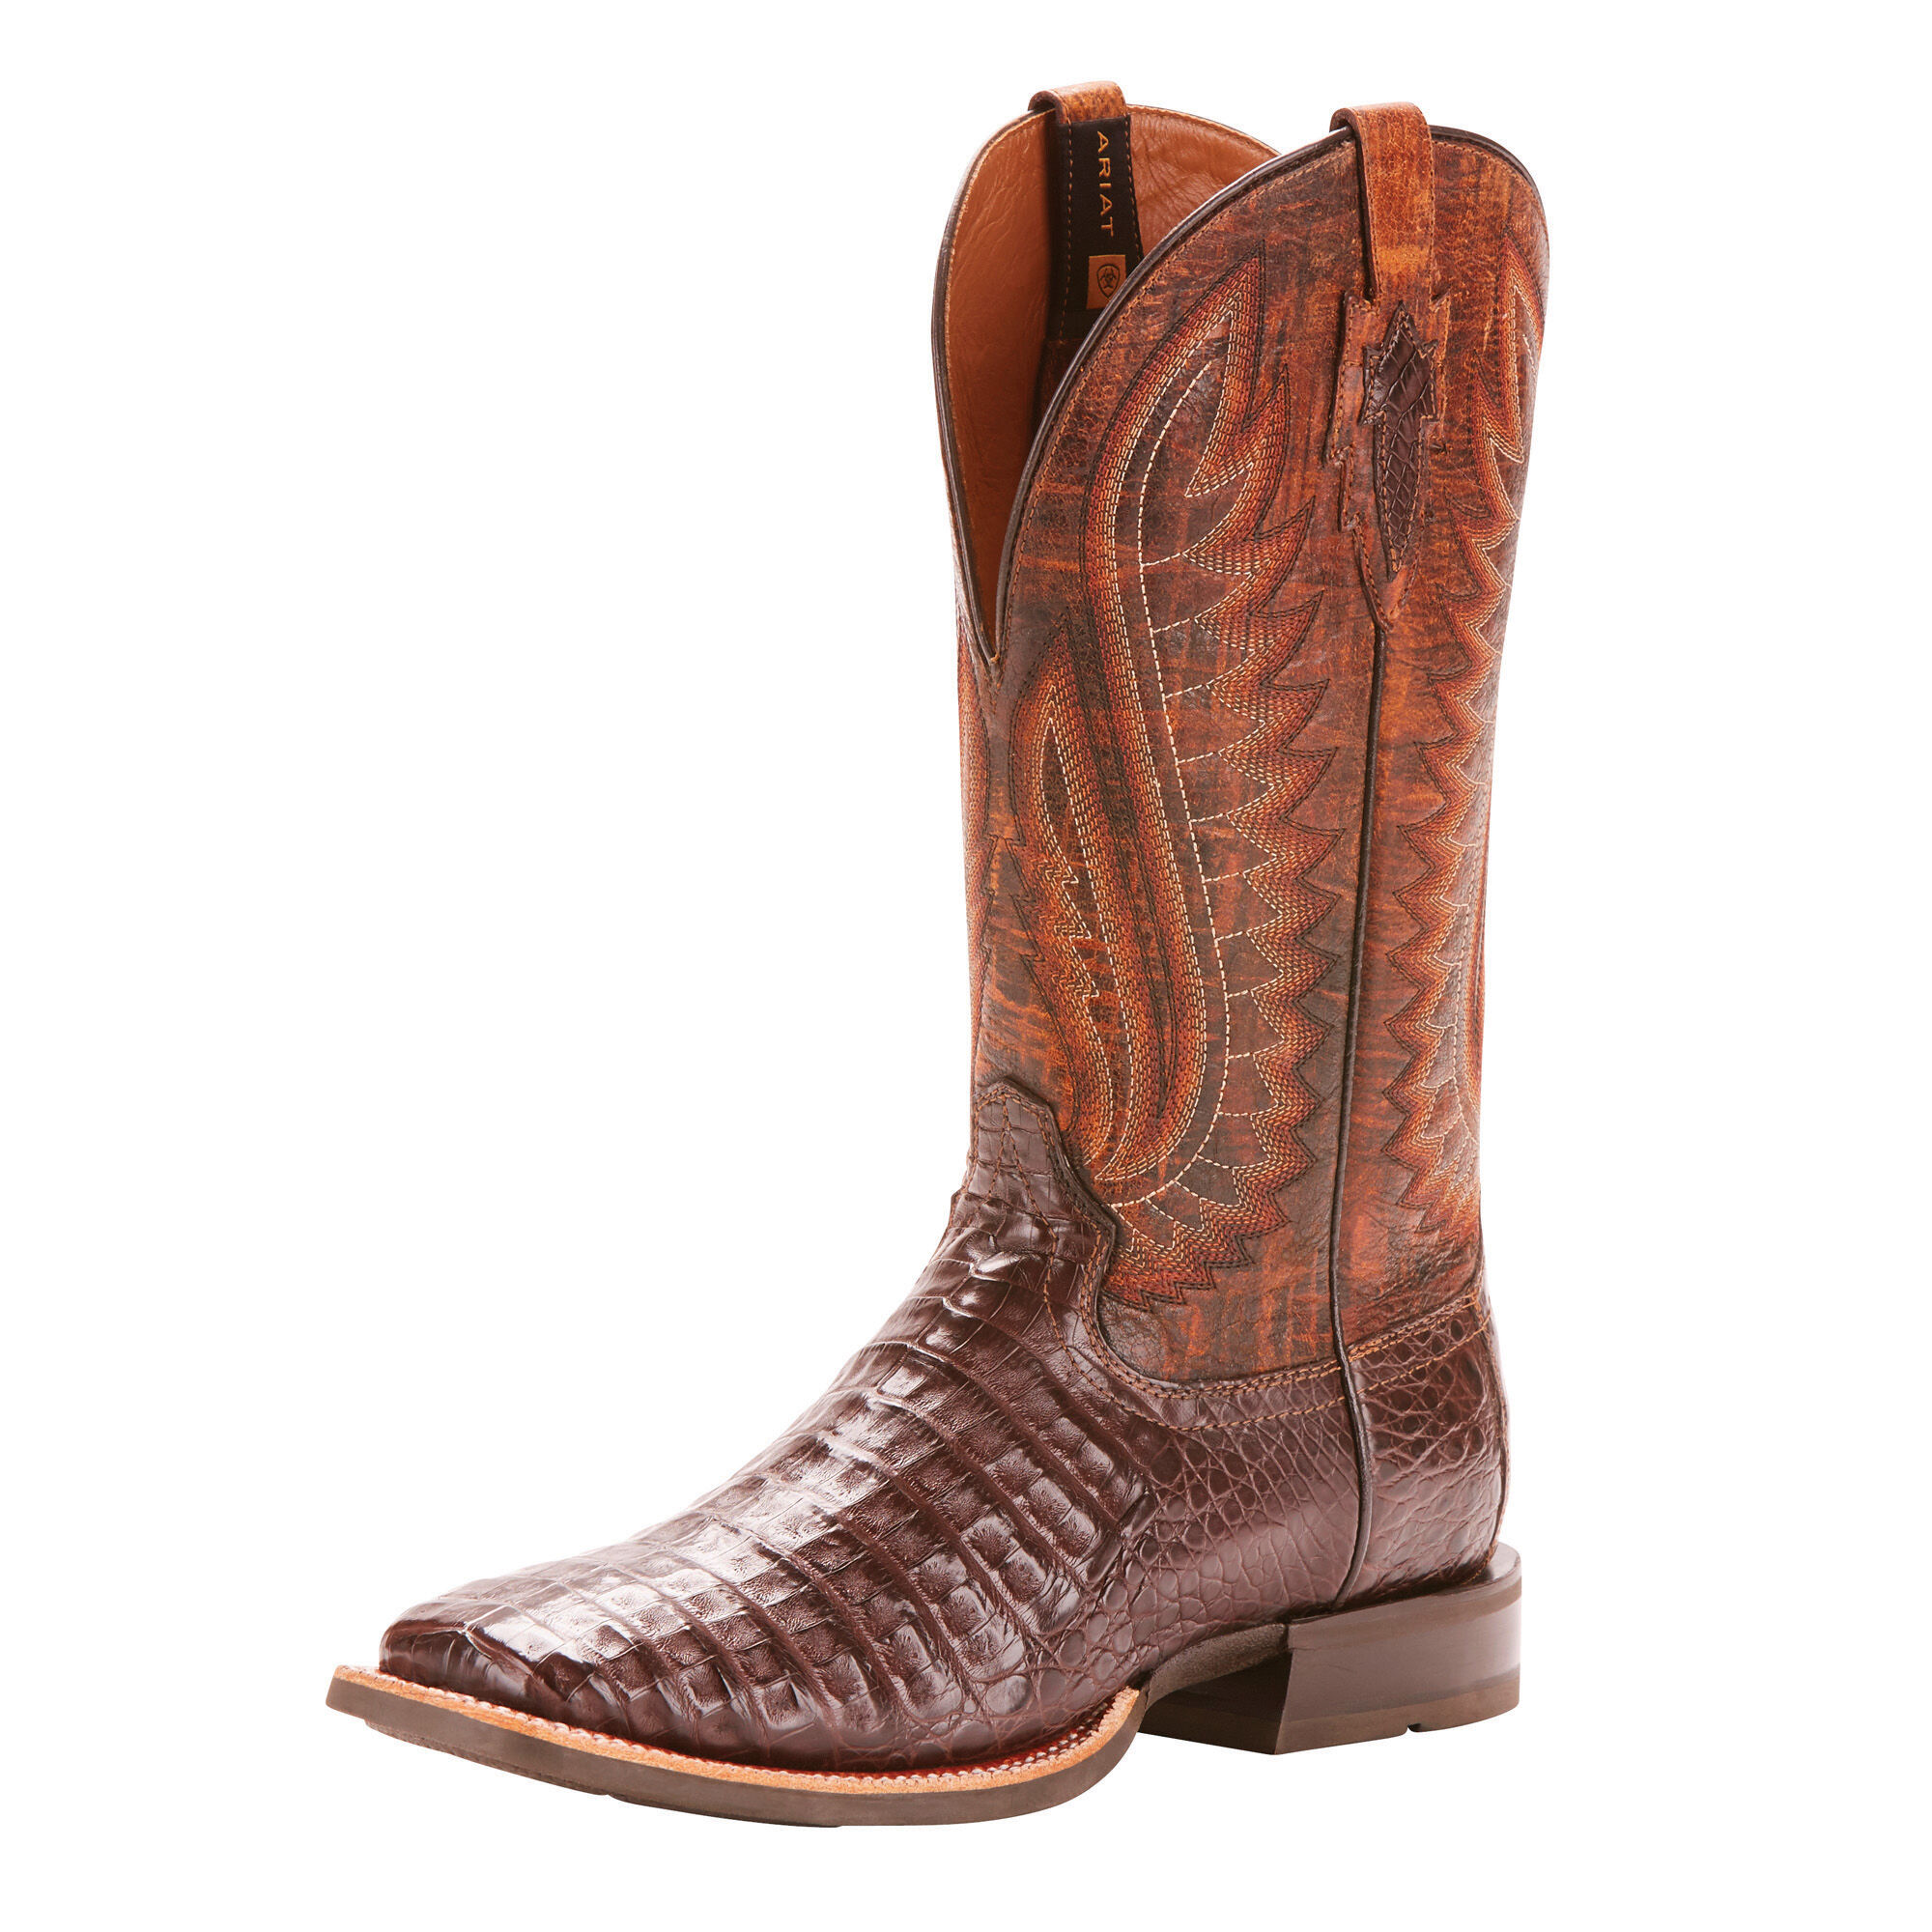 Caiman \u0026 Gator Skin Cowboy Boots 